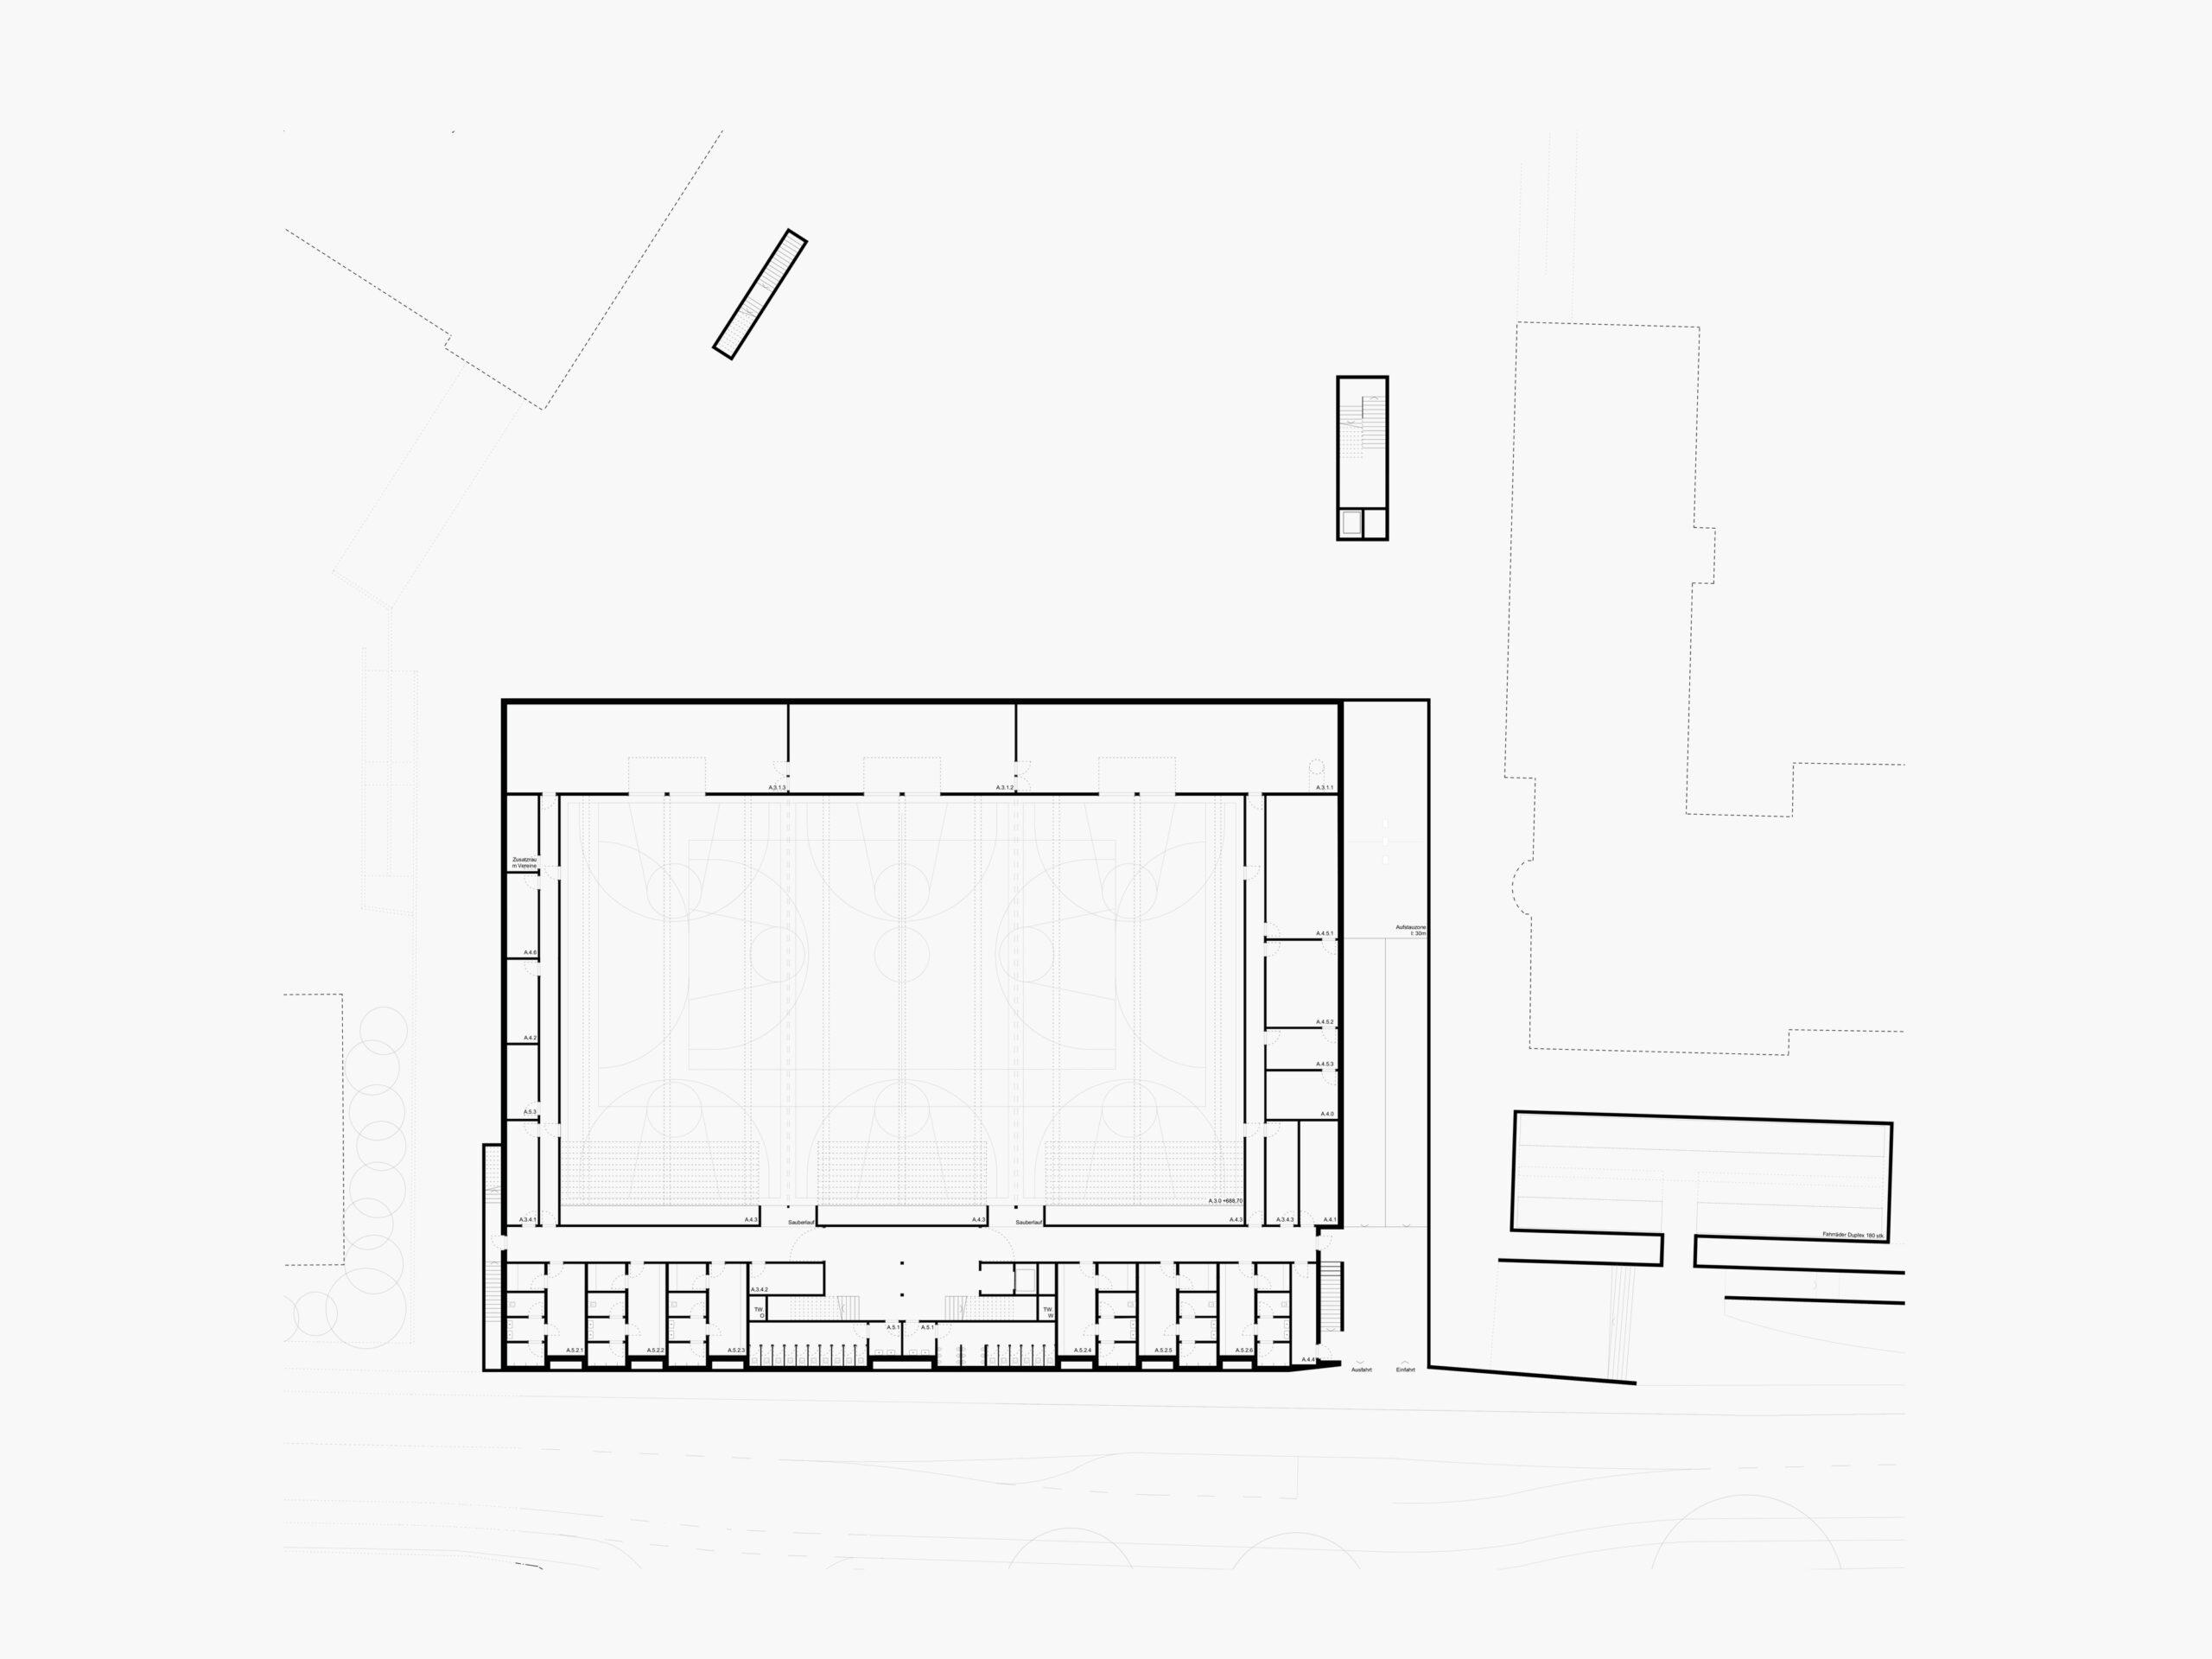 Michael-Becker-Architects-Architekten-3-fach-Turnhalle-Kempten-Grundriss-KG